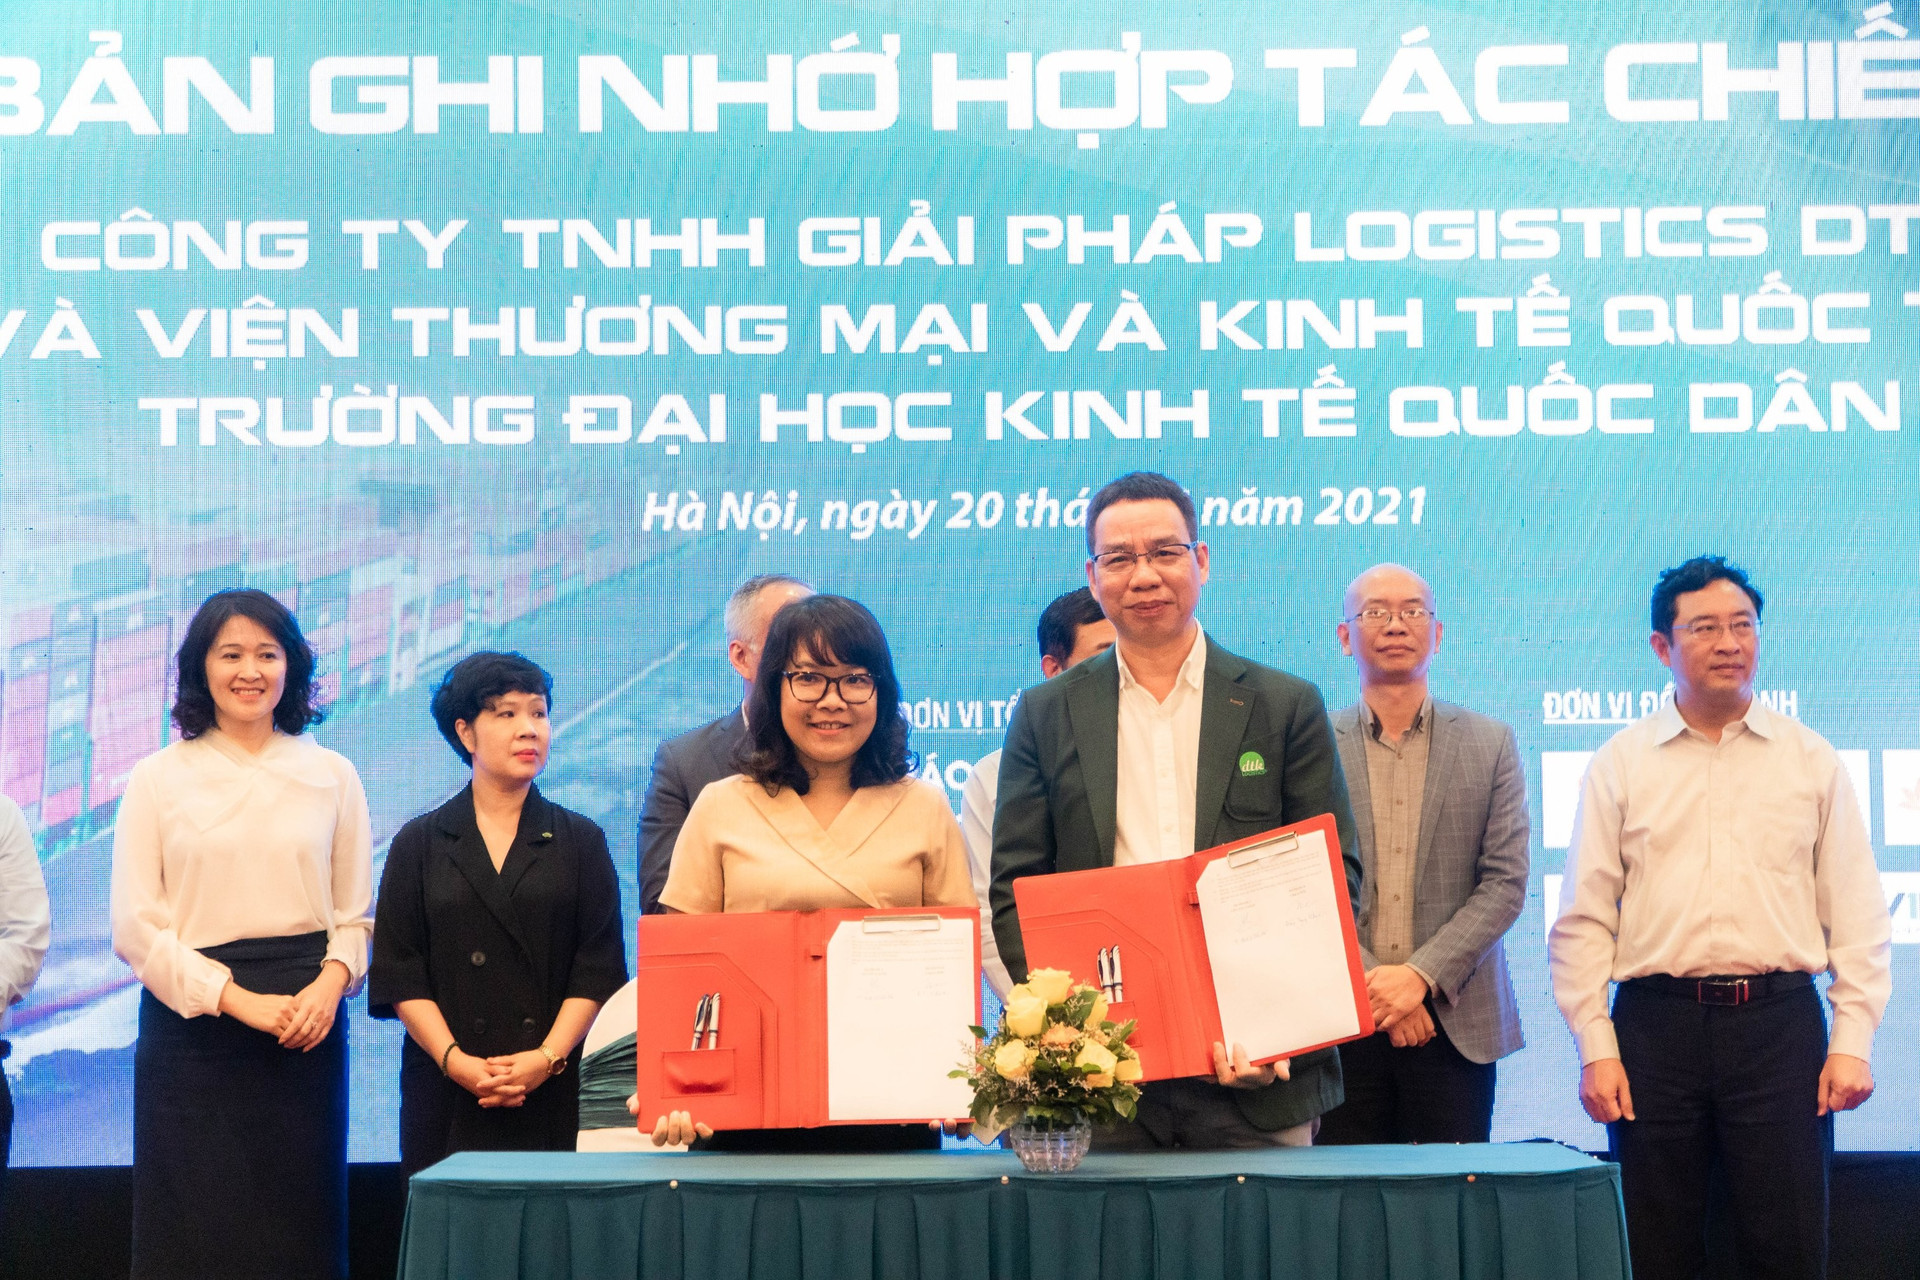 Lễ ký Văn bản hợp tác giữa Công ty TNHH Giải pháp Logistics DTK với Viện Thương mại và Kinh tế thuộc Trường Đại học Kinh tế Quốc dân 